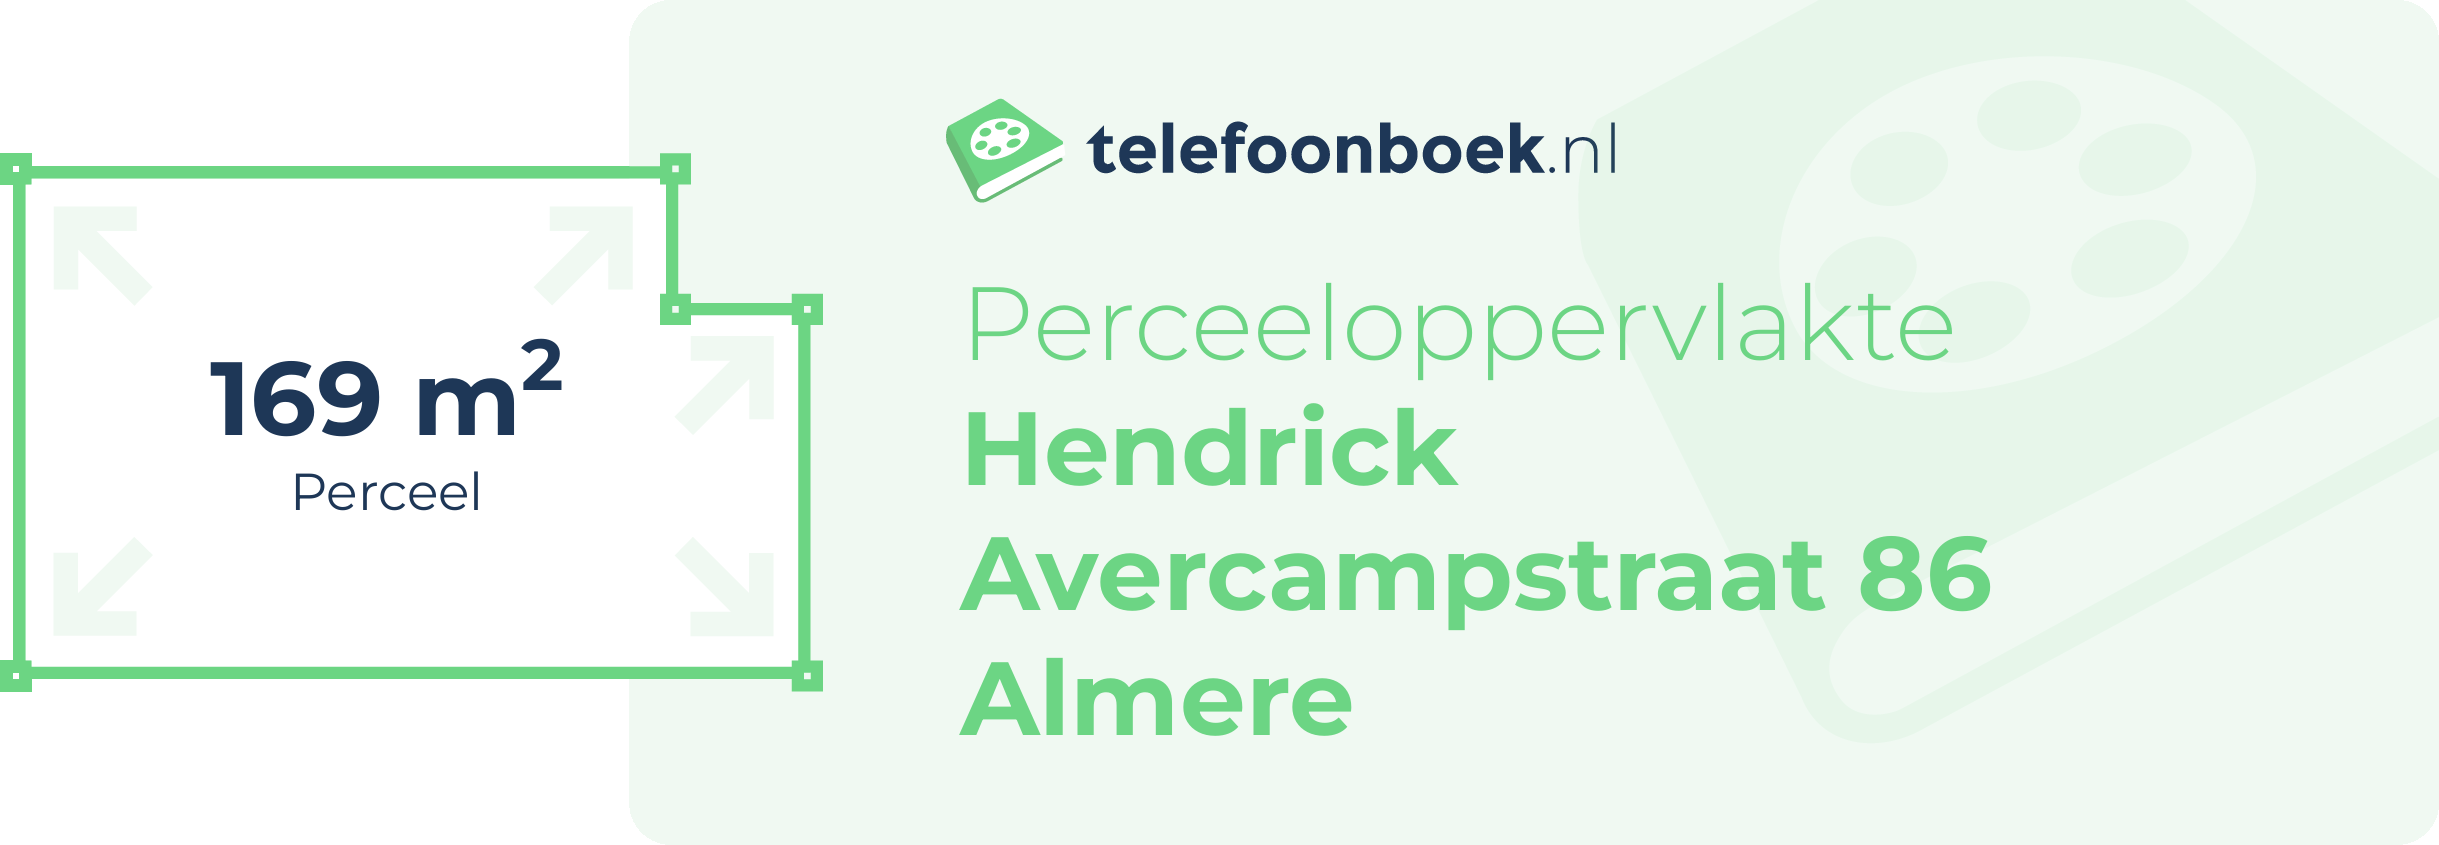 Perceeloppervlakte Hendrick Avercampstraat 86 Almere